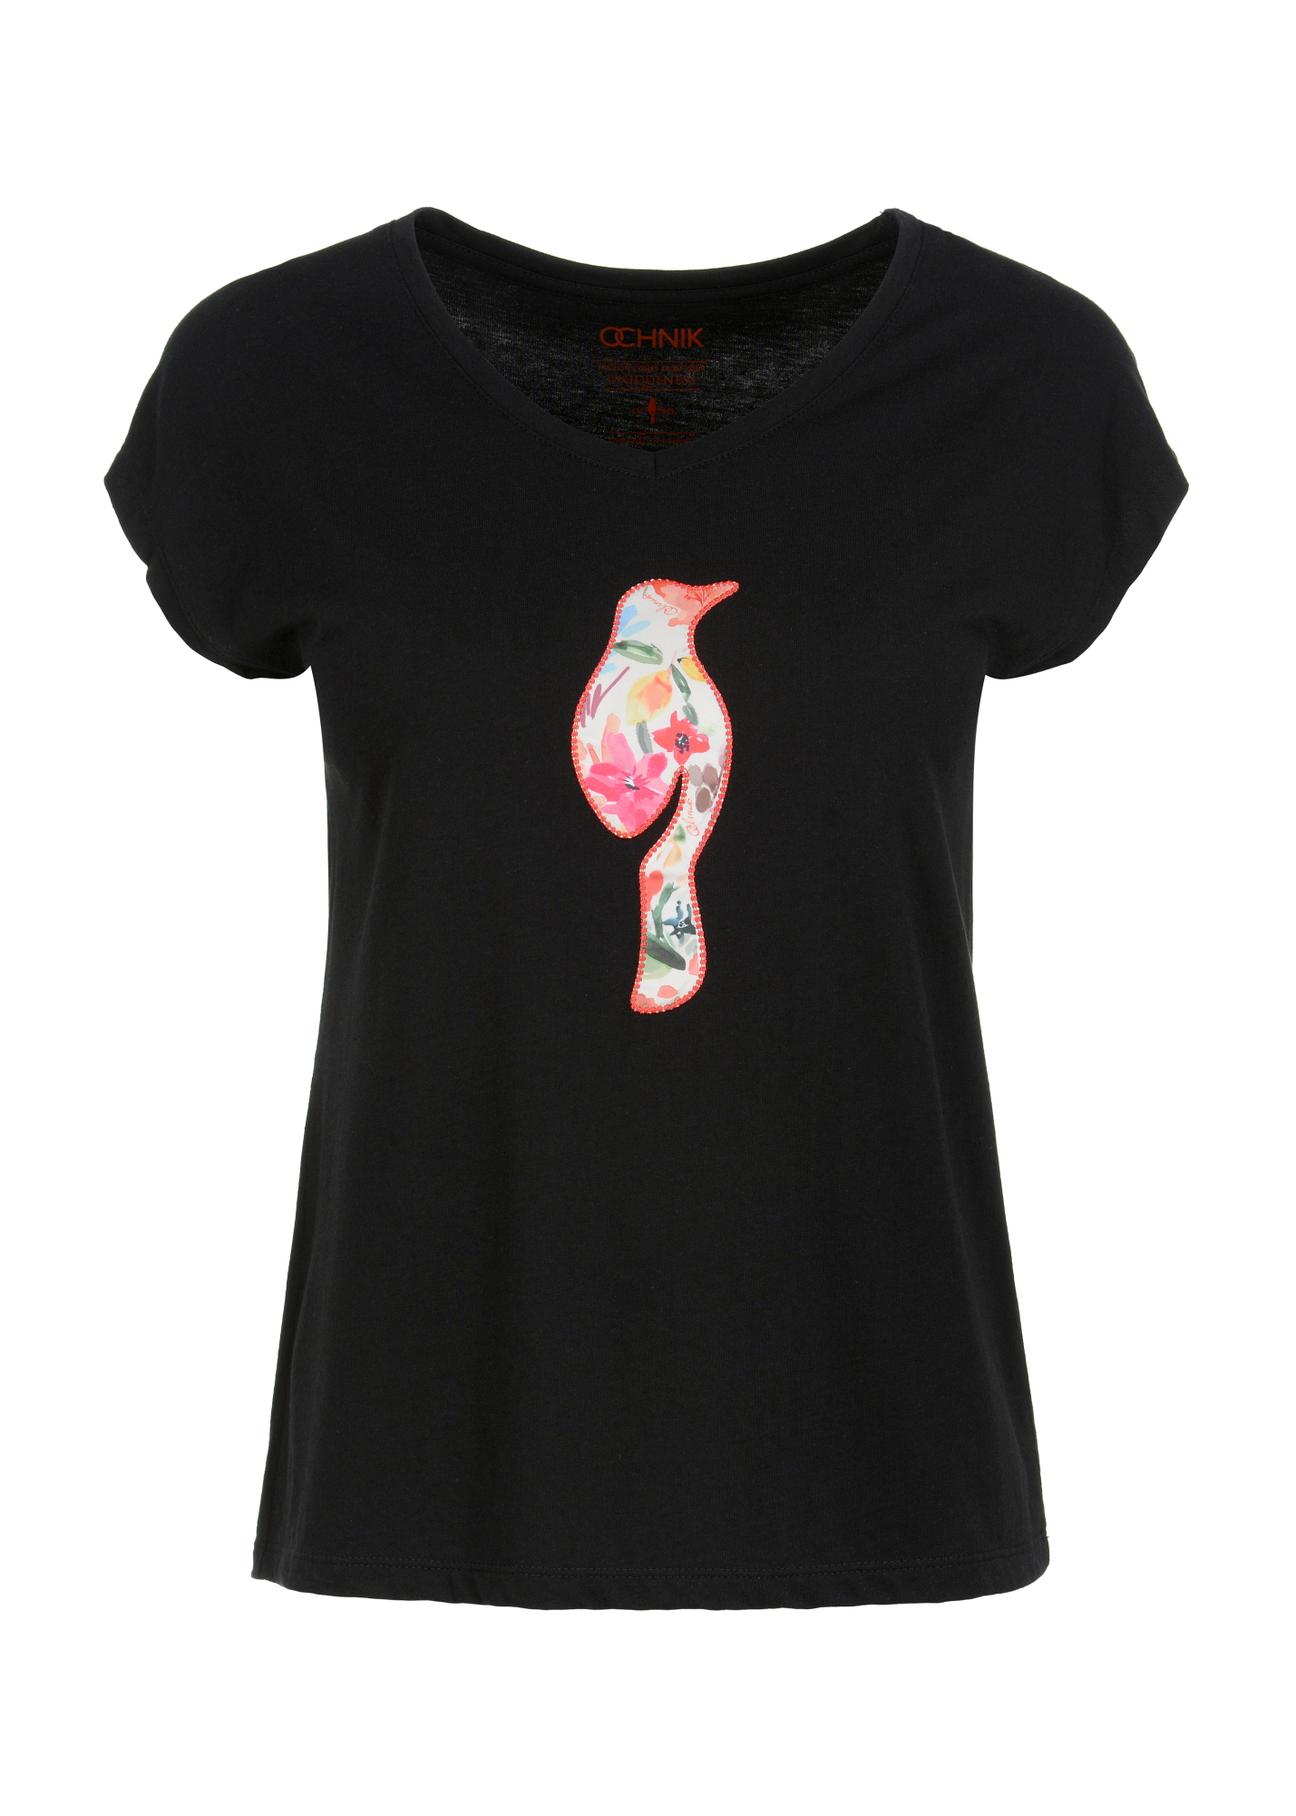 Czarny T-shirt damski z kwiatowym logo TSHDT-0106-99(W23)